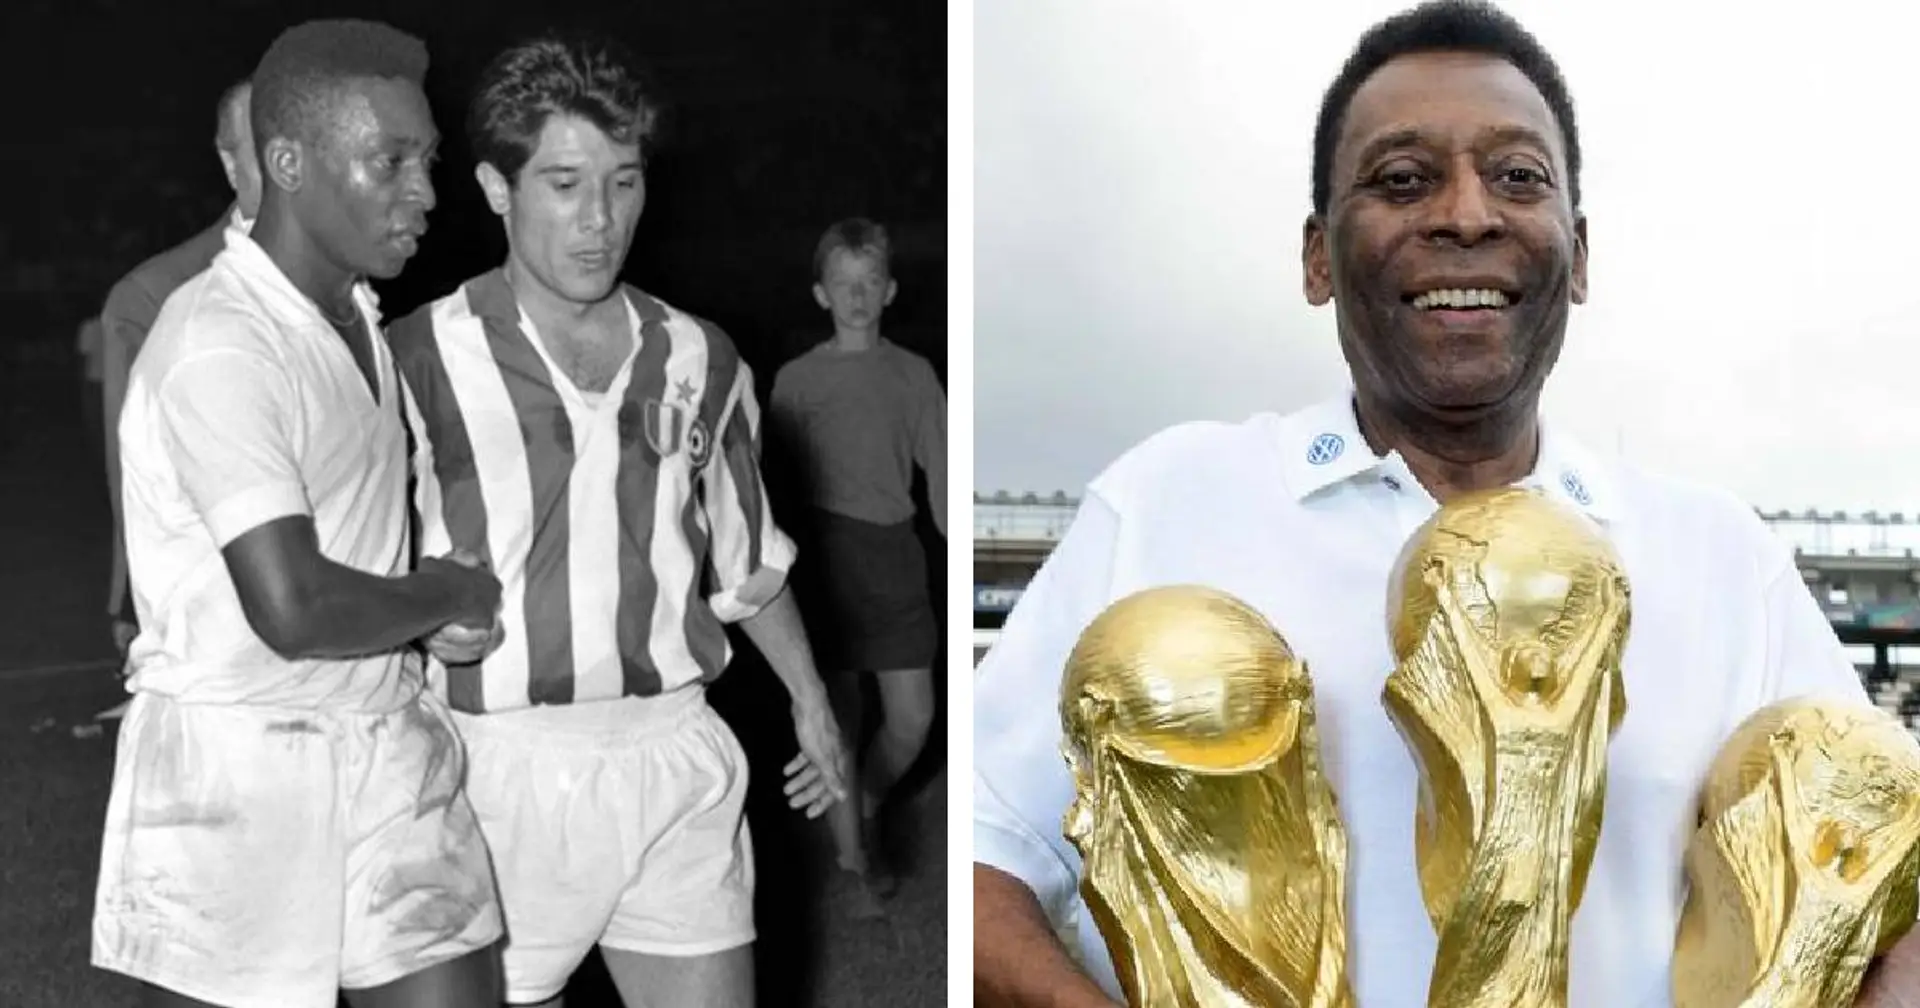 Un'immagine che vale mille parole: l'emozionante ricordo della Juve dopo la scomparsa di Pelé